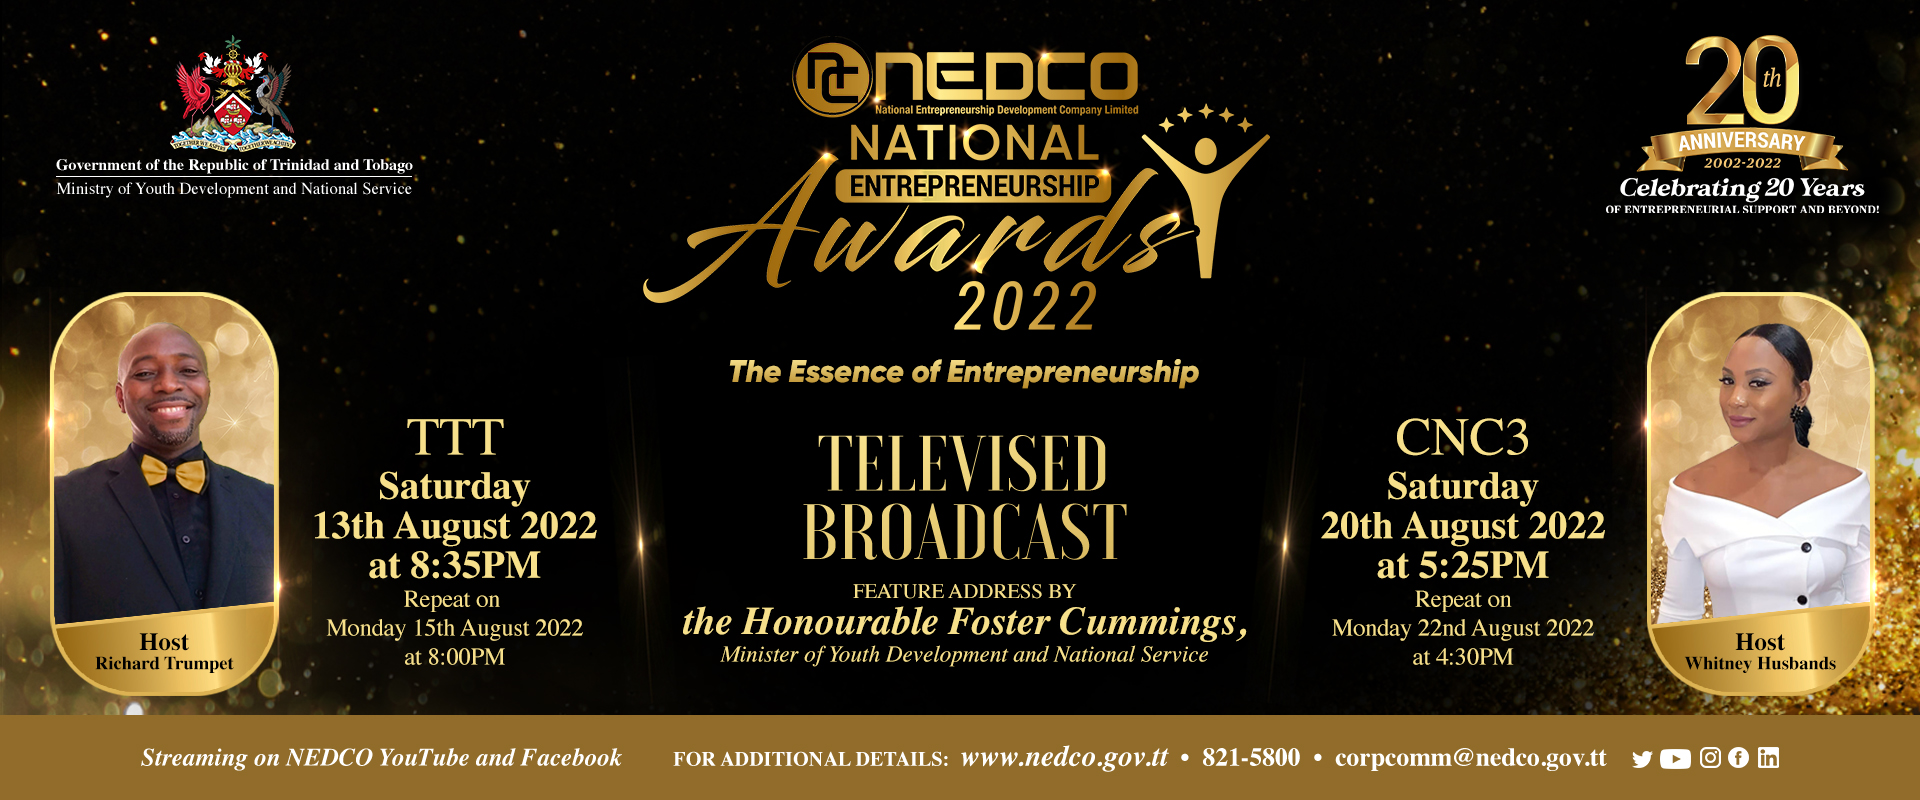 NEDCO Awards TV 